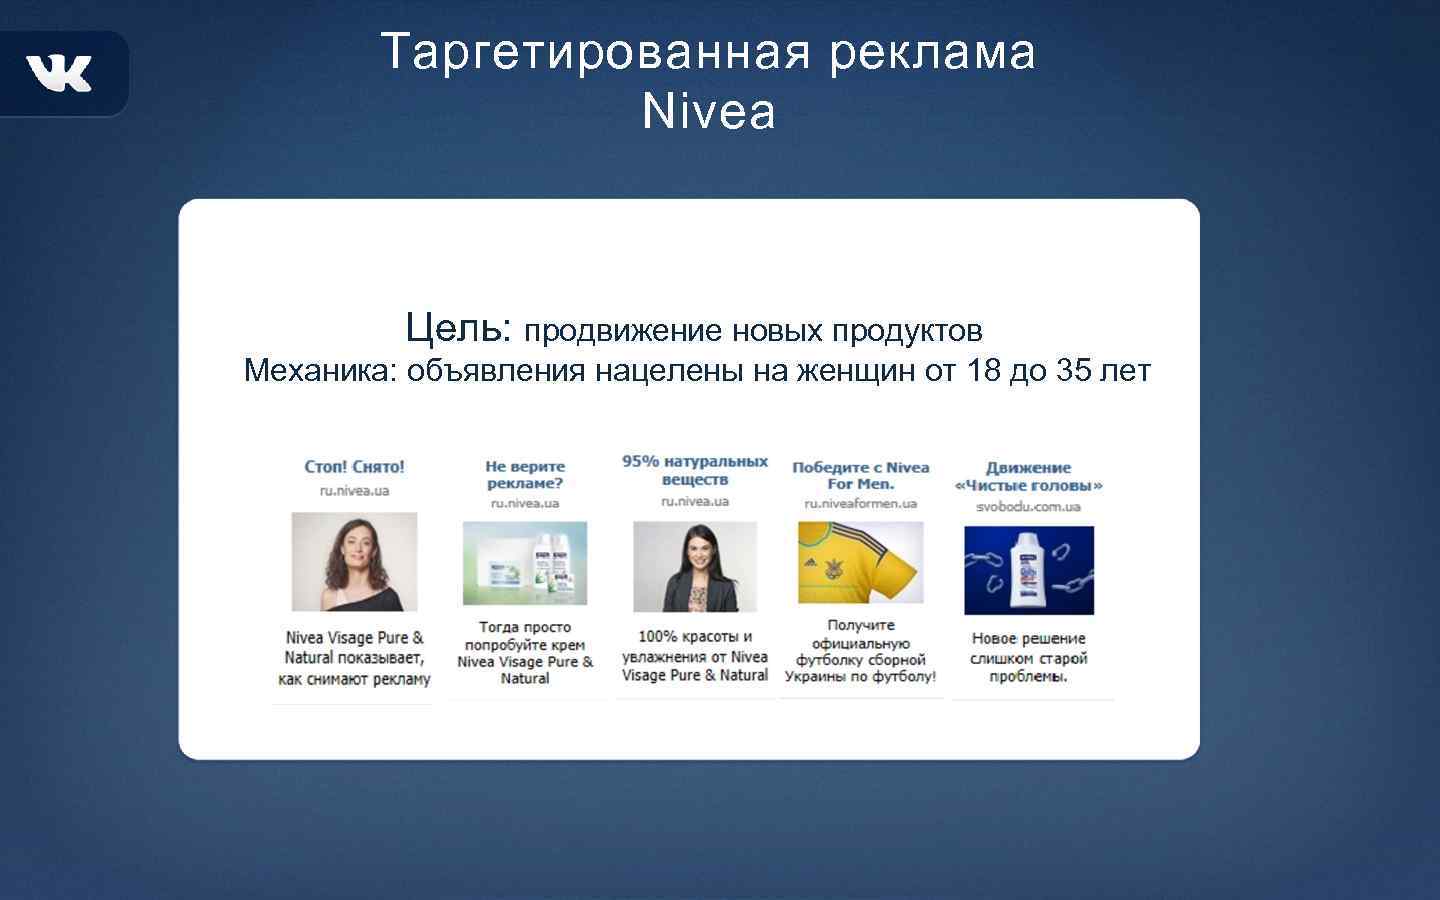 Таргетированная реклама Nivea Цель: продвижение новых продуктов Механика: объявления нацелены на женщин от 18